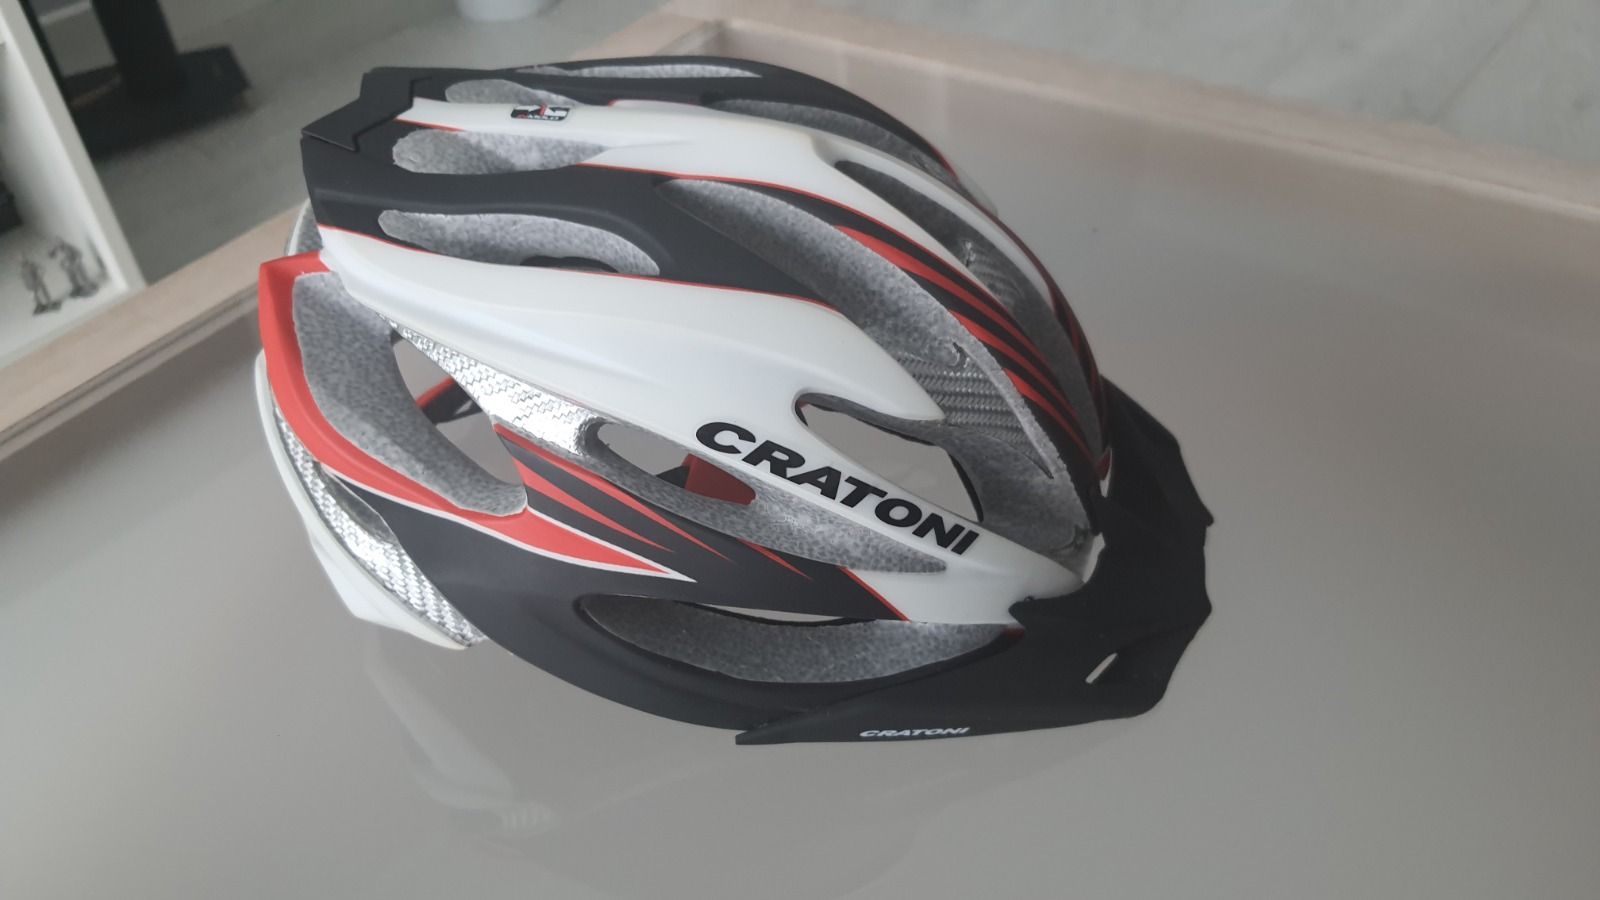 Шлем Cratoni c-limit 2 56-59см состояние нового (комплект доп подкладок)